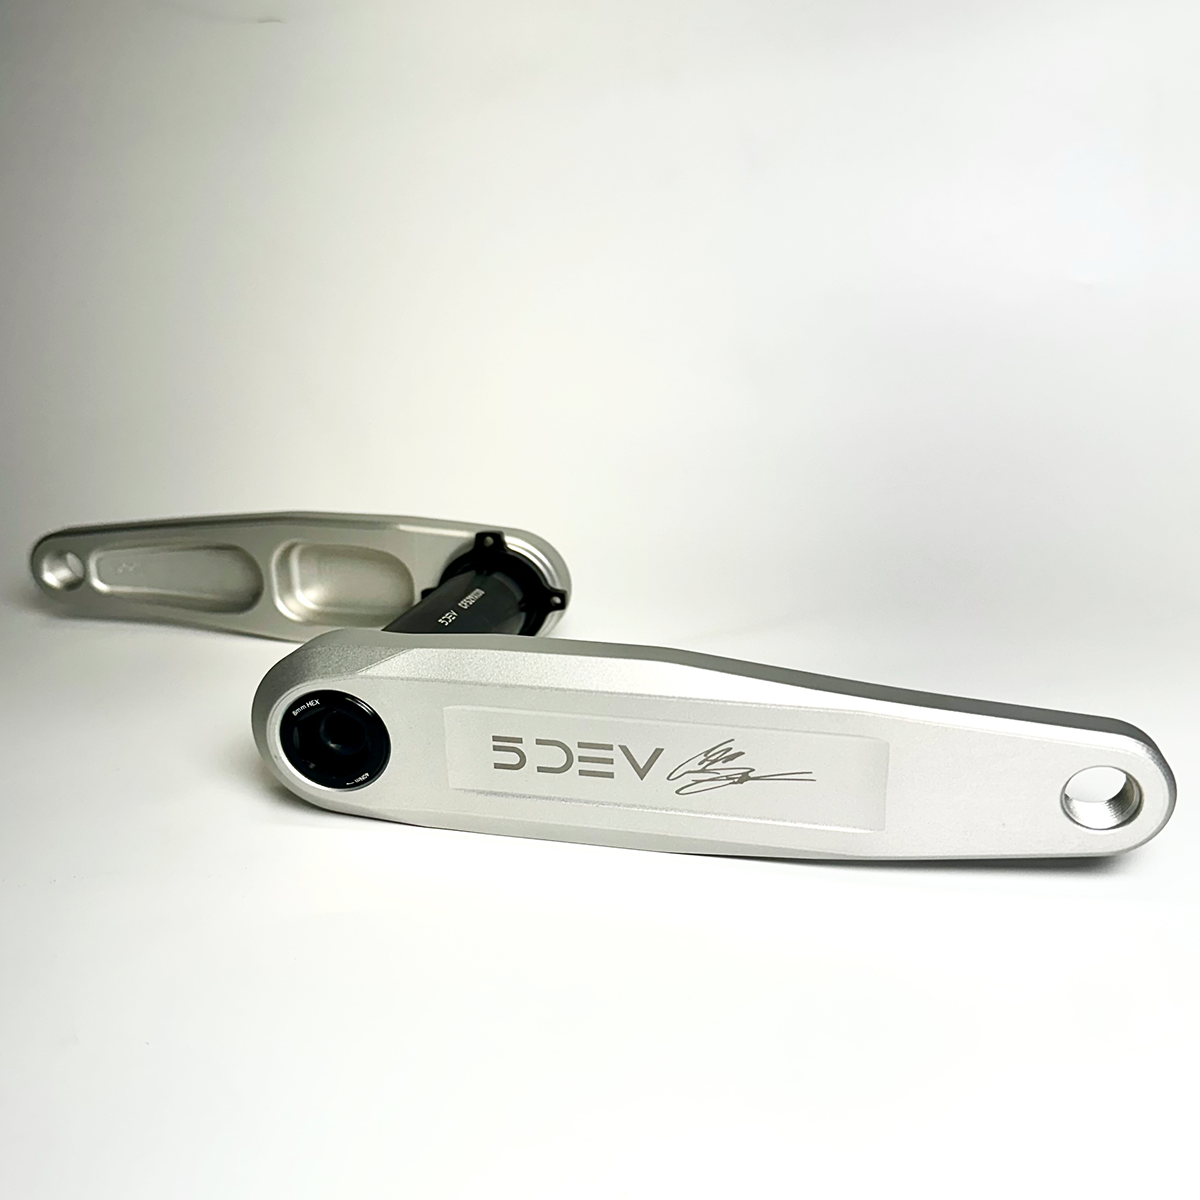 5DEV Cam Zink Signature Freeride Crank silver